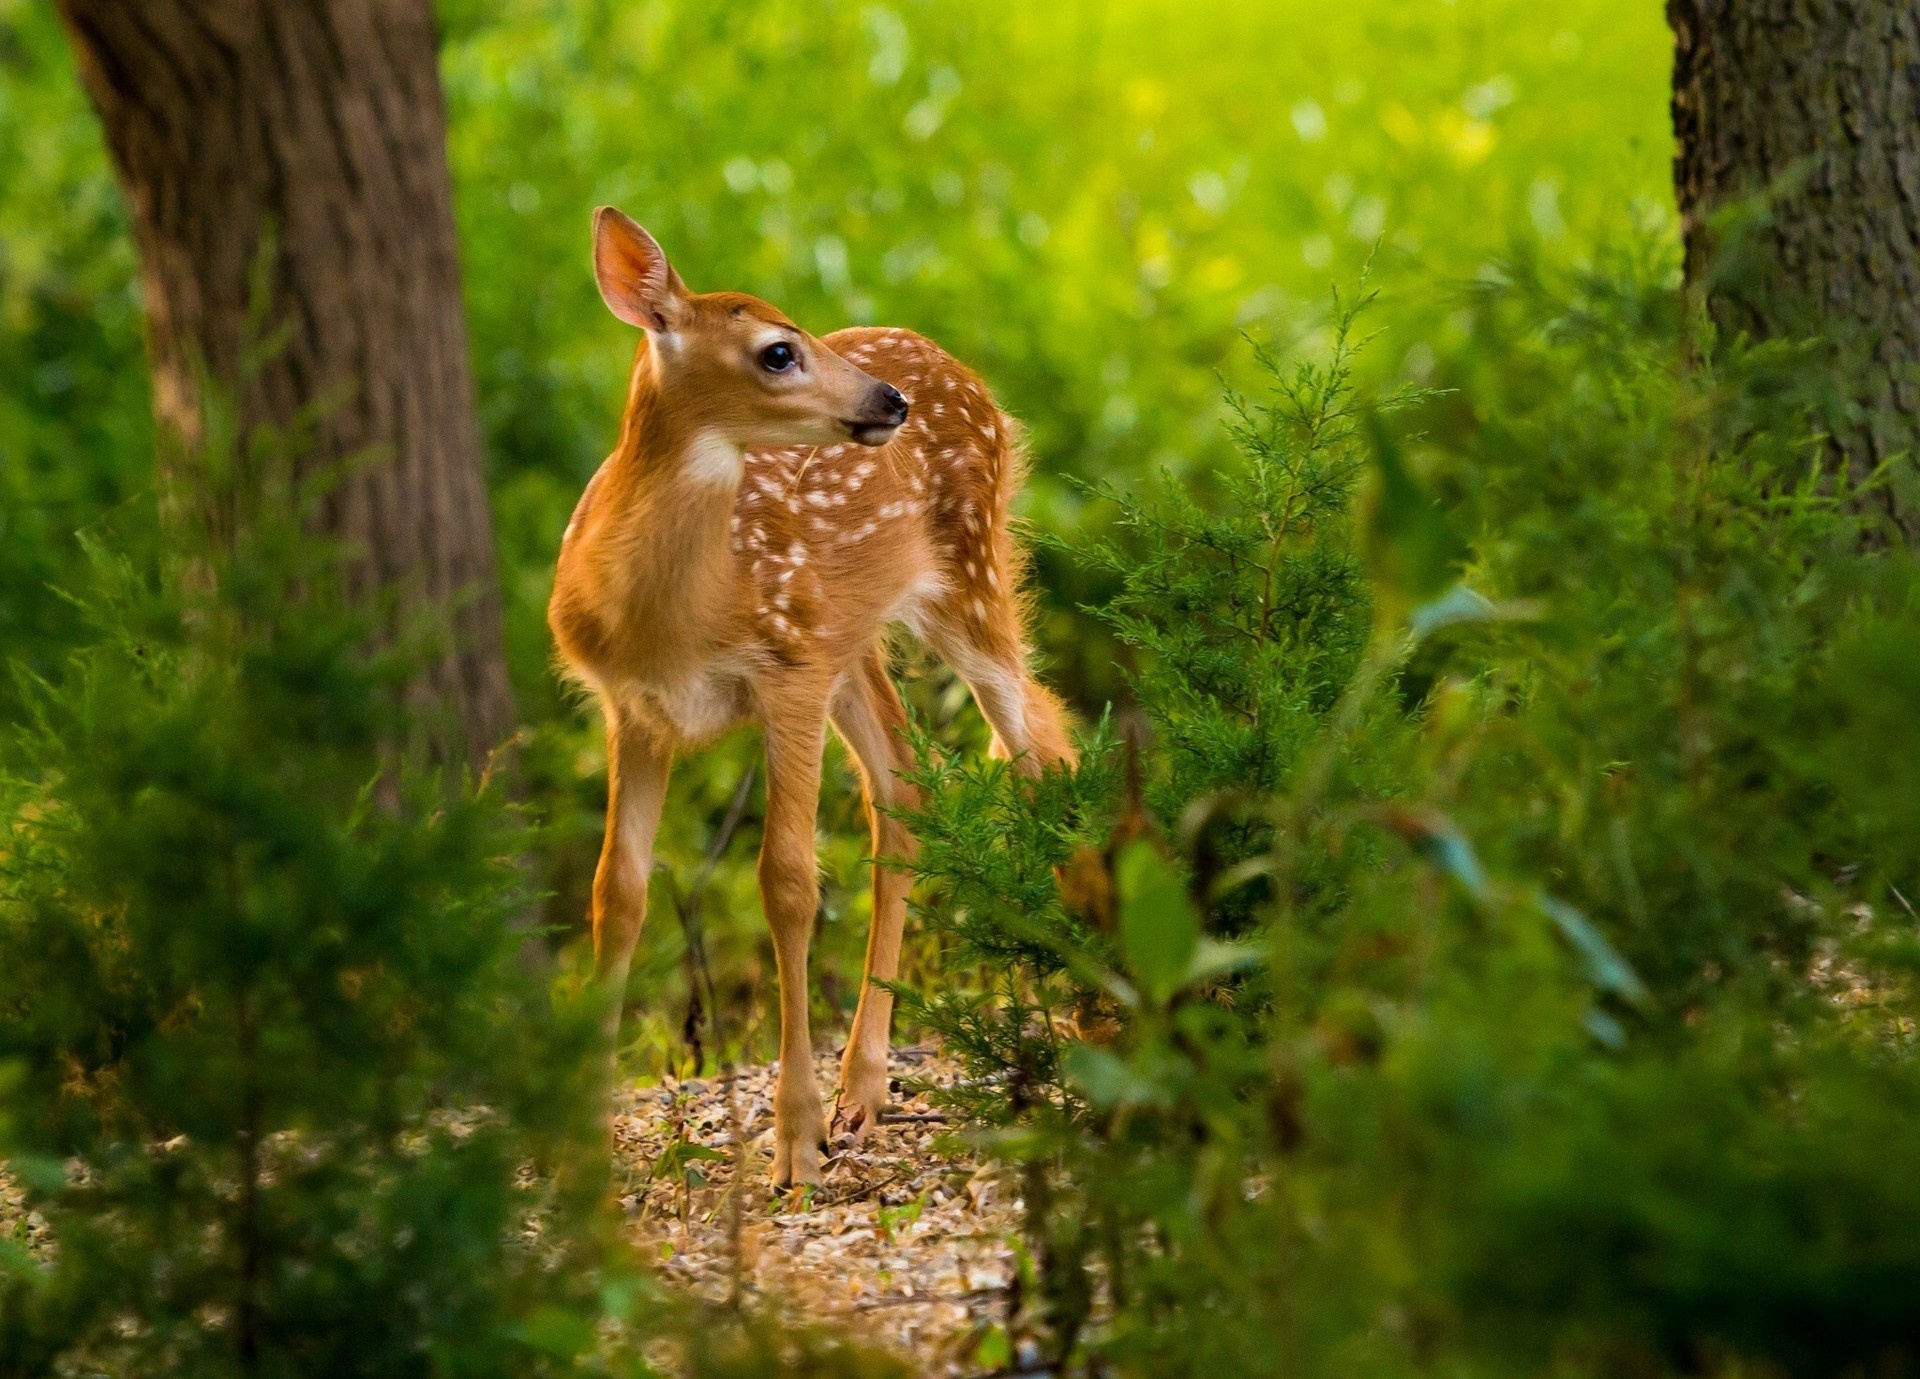 Nature animals deer, HD desktop, Mobile backgrounds, 1920x1380 HD Desktop